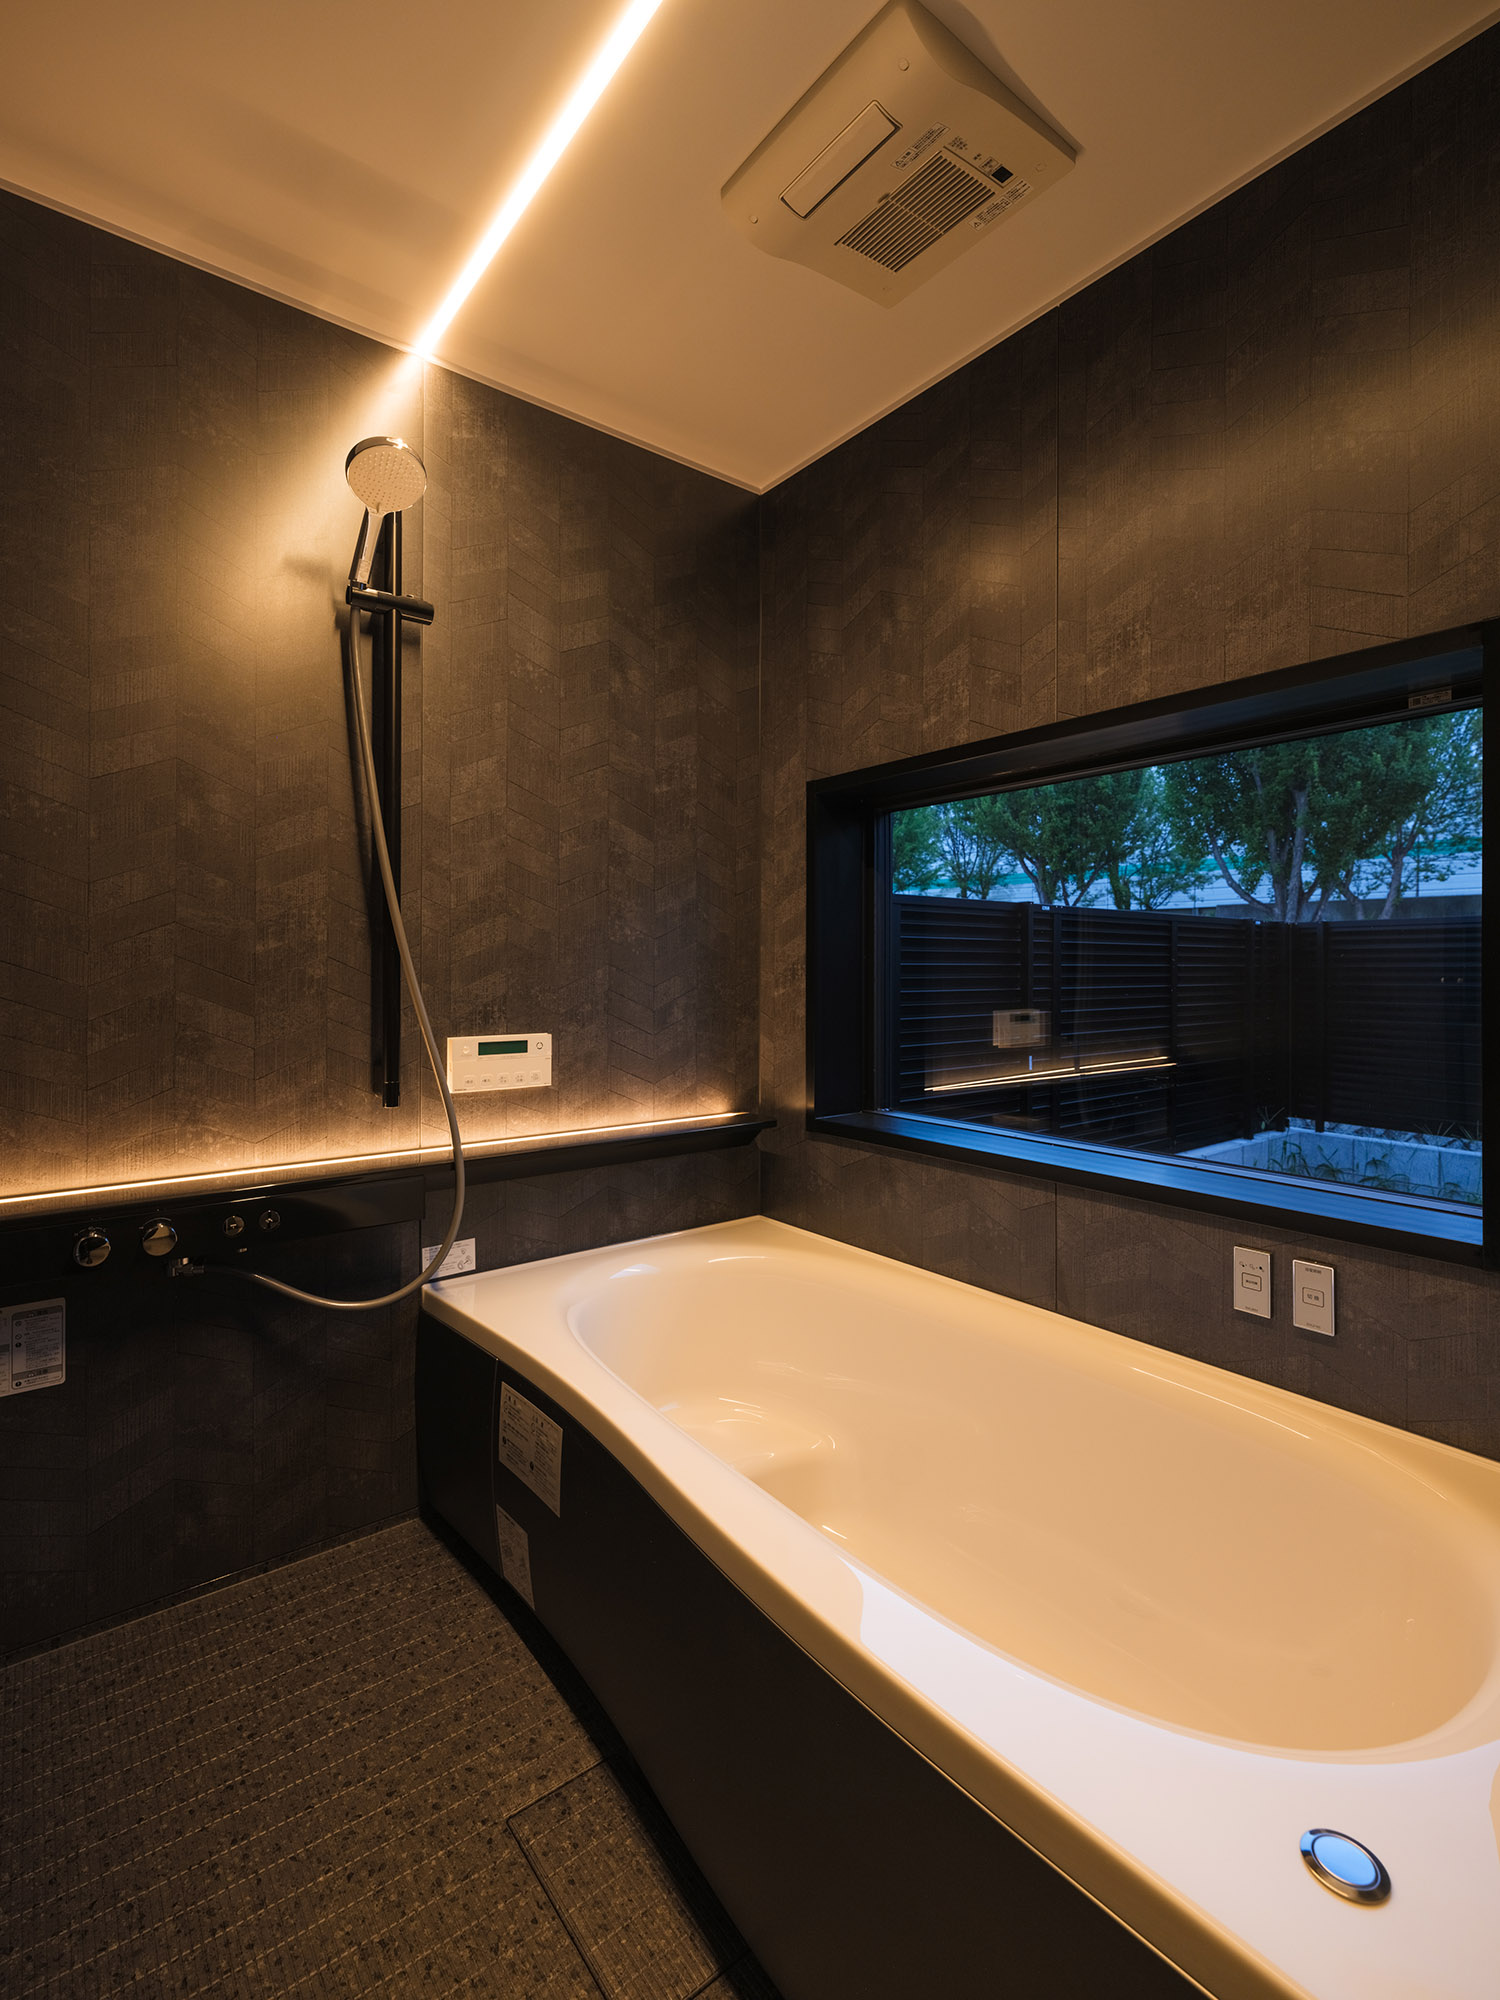 線状の照明が取り付けられた、窓のある黒い壁の浴室・デザイン住宅